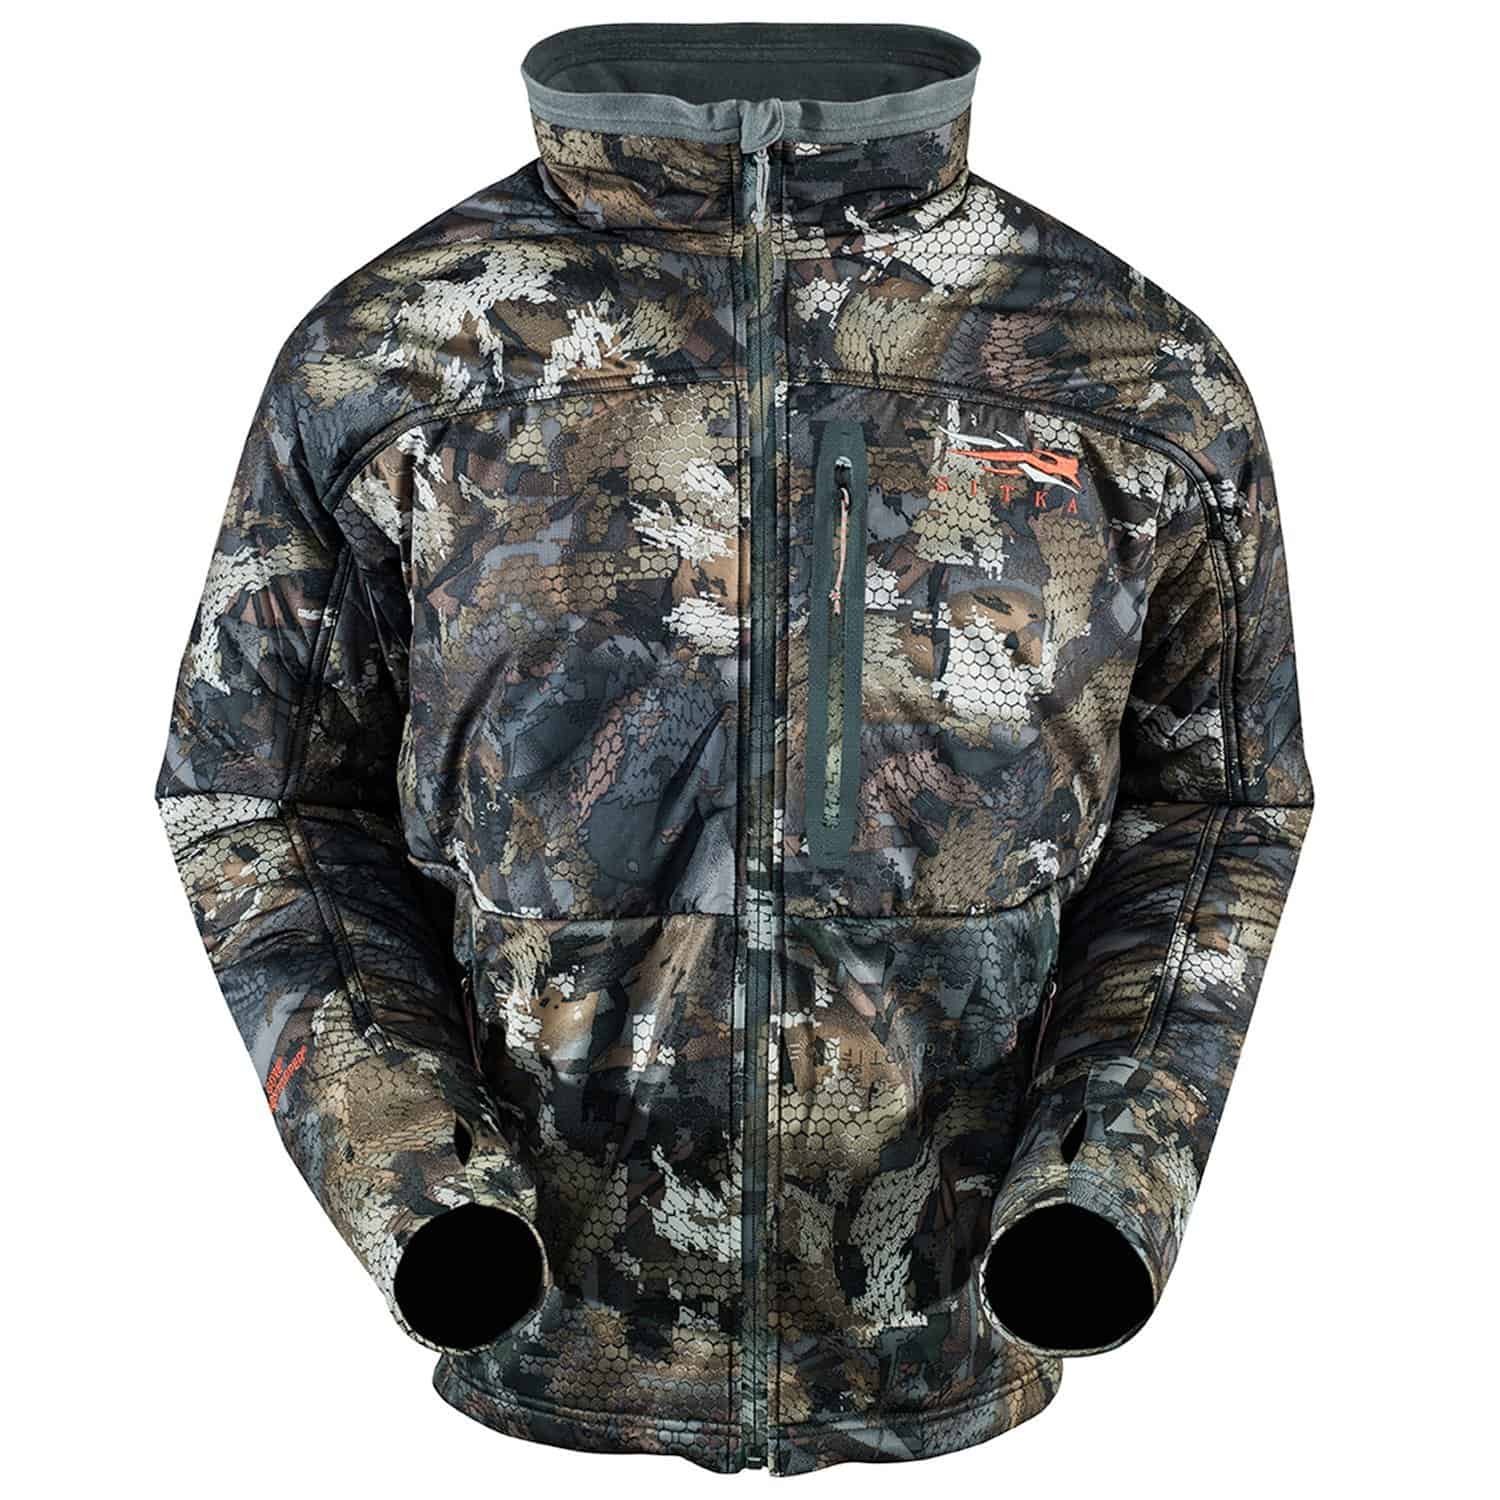 waterproof duck hunting jacket